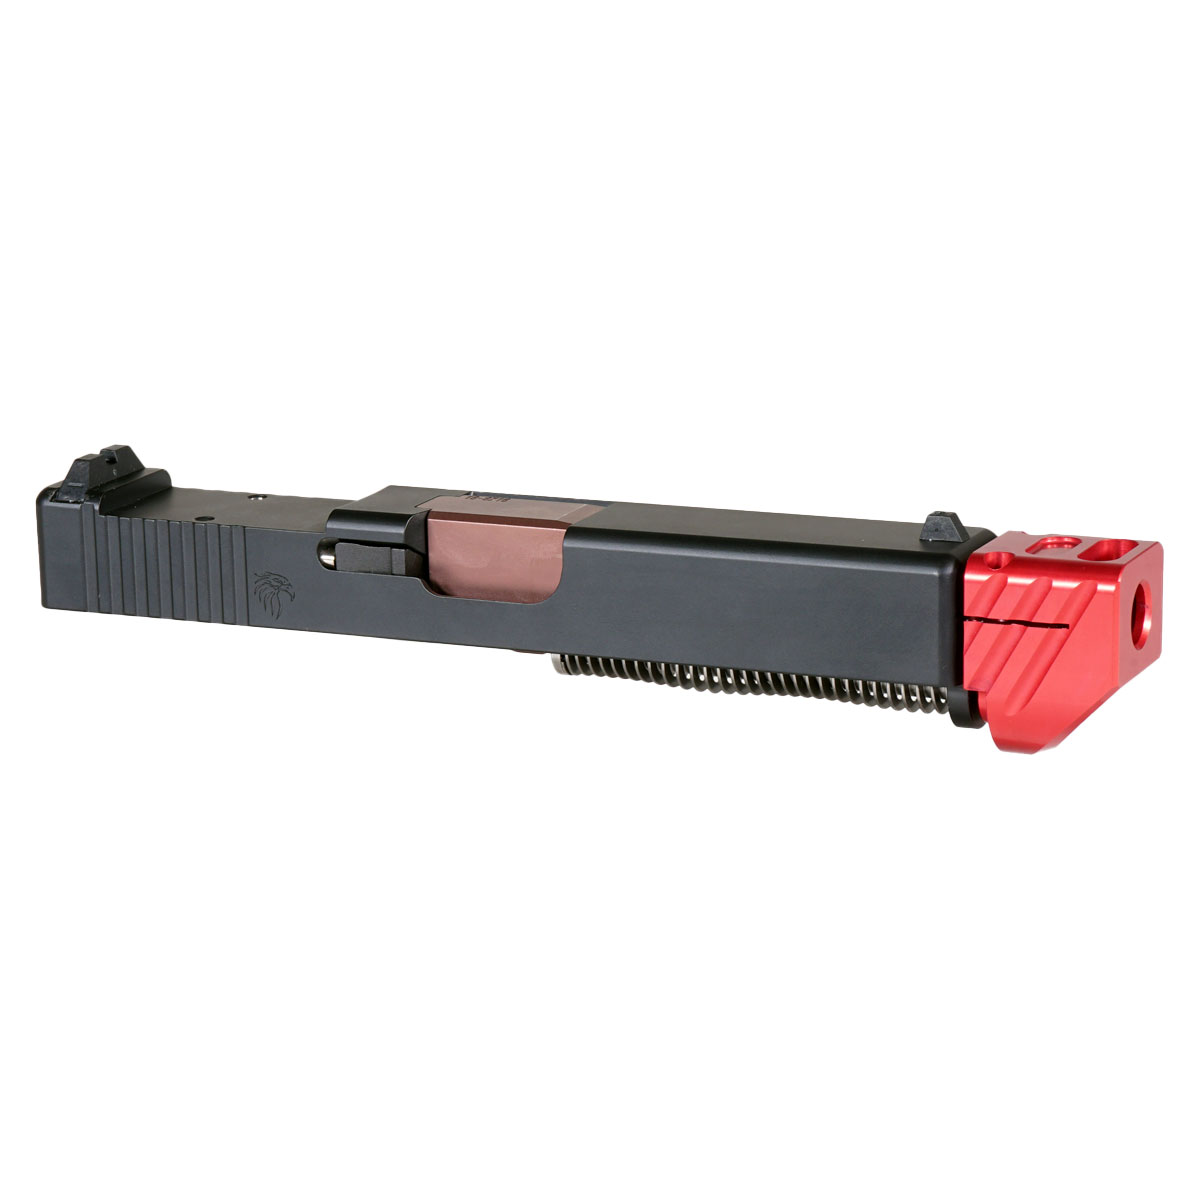 DDS 'Blockbuster V3 w/ Red Compensator' 9mm Complete Slide Kit - Glock 19 Gen 1-3 Compatible